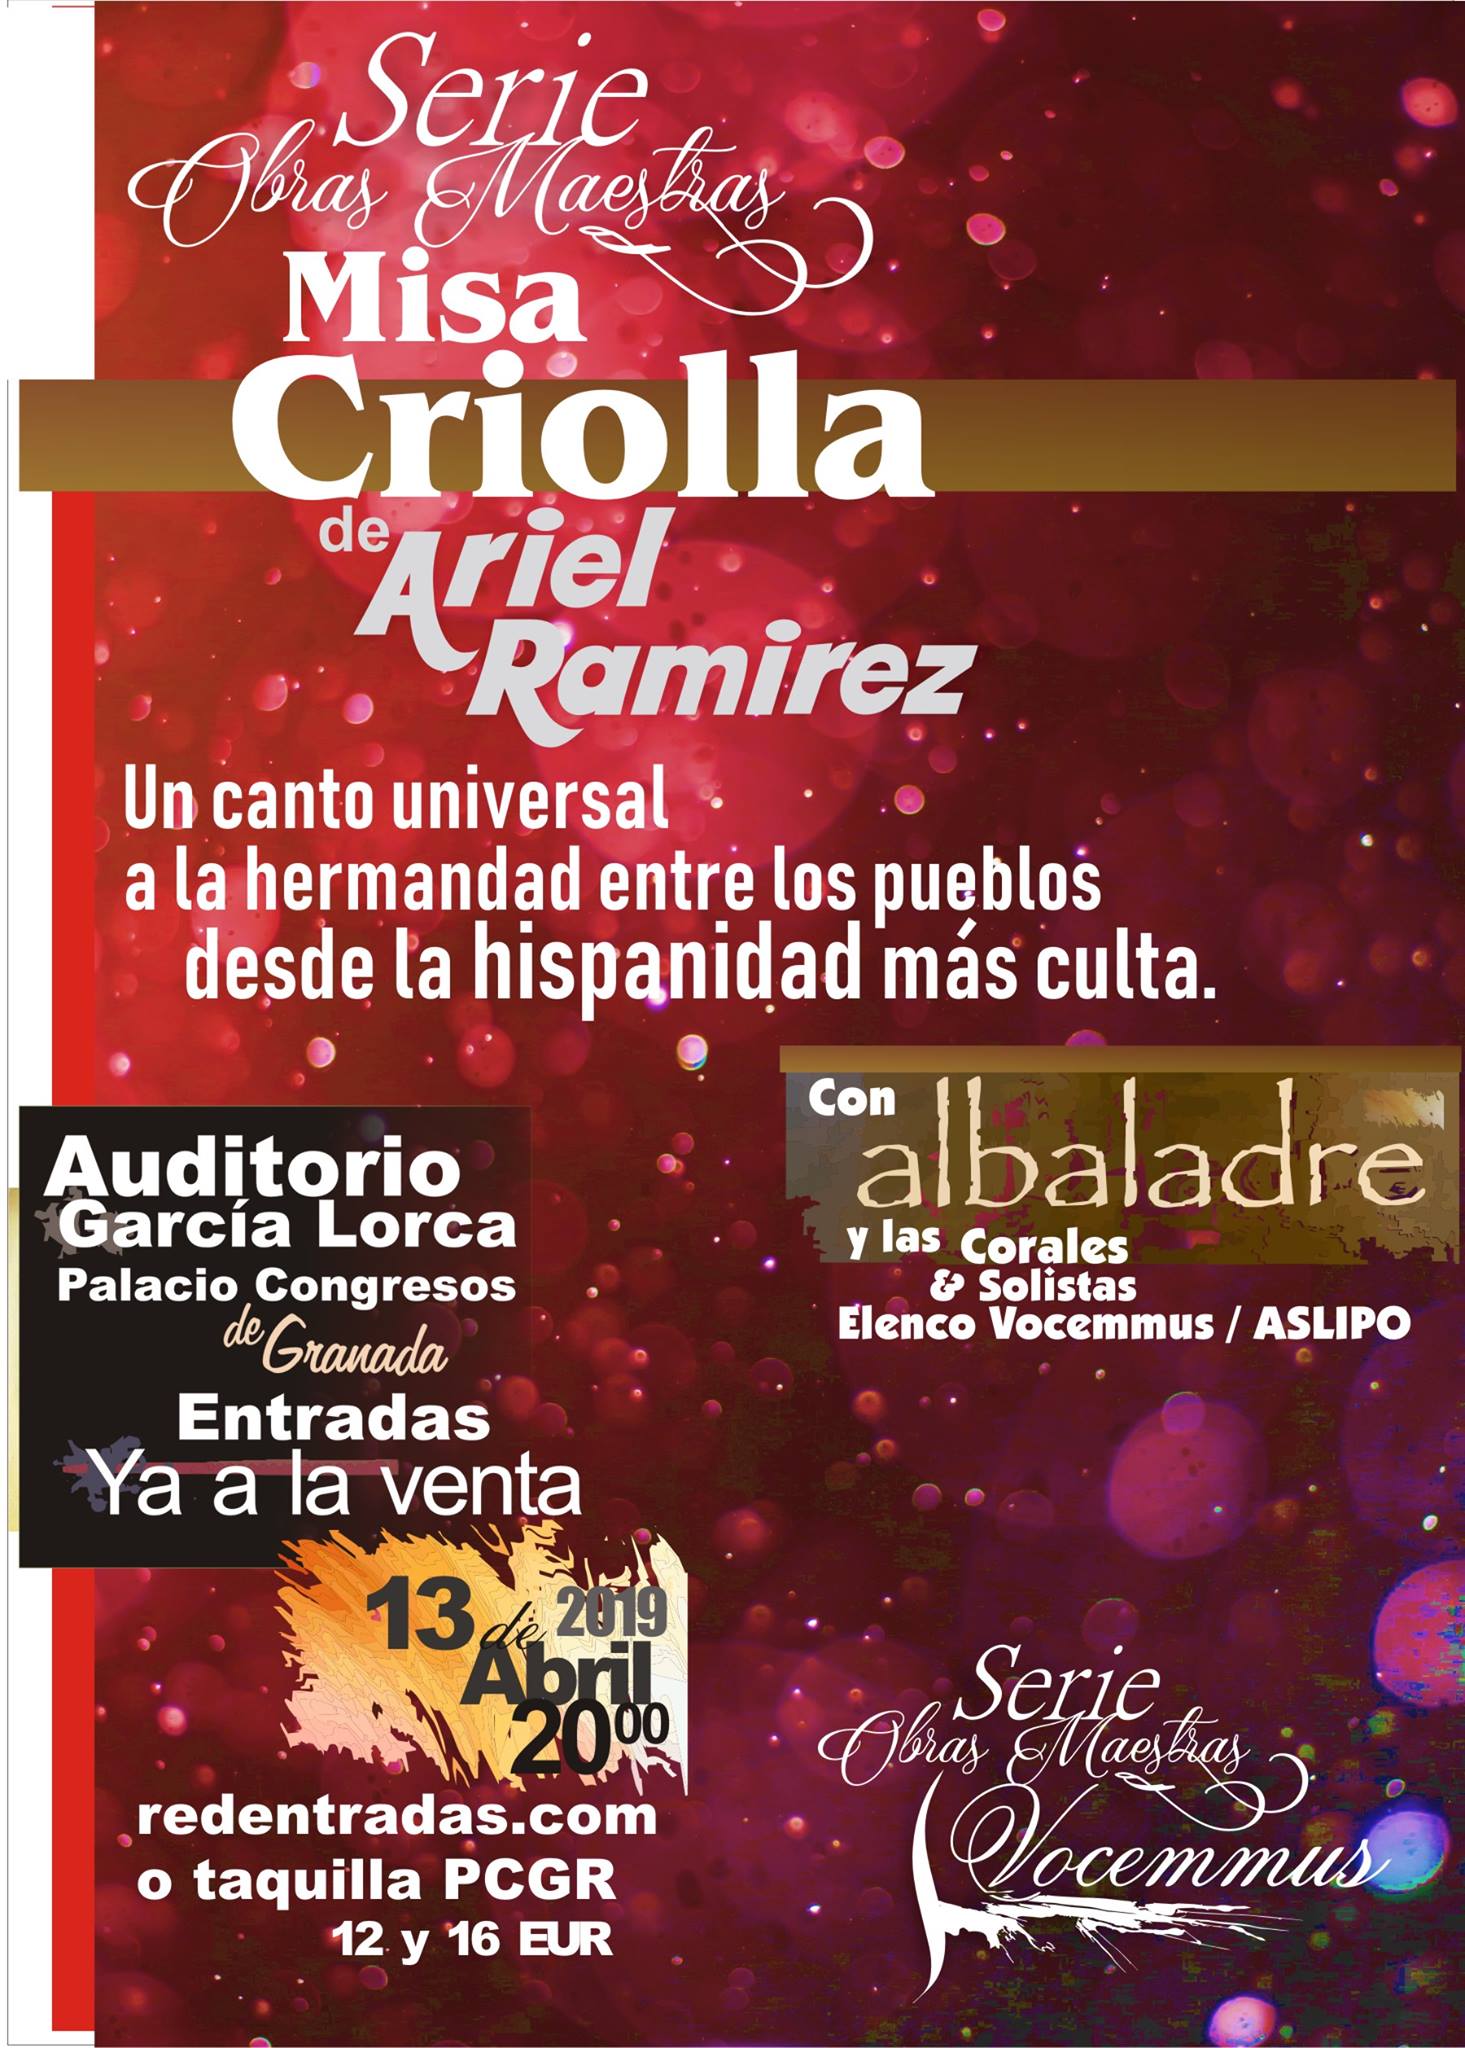 Misa Criolla de Ariel Ramírez llega en abril al Palacio de Congresos Granada.